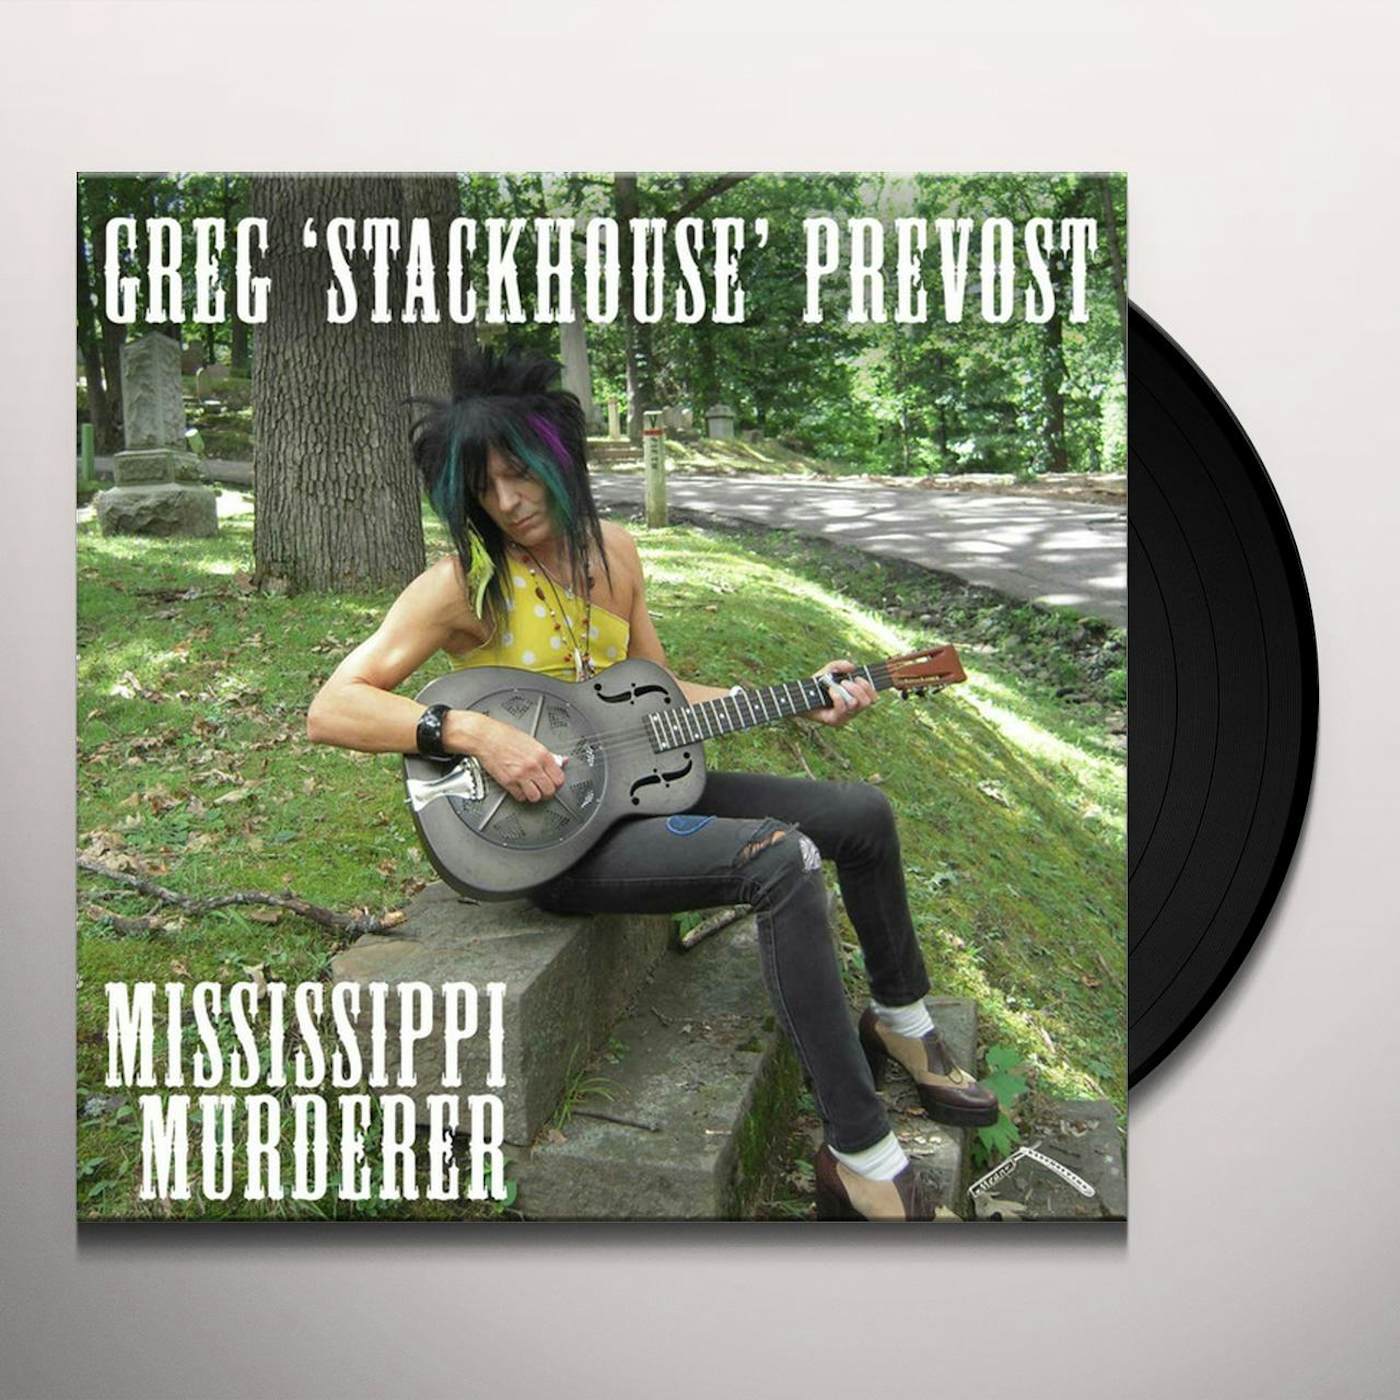 Greg 'Stackhouse' Prevost Mississippi Murderer Vinyl Record